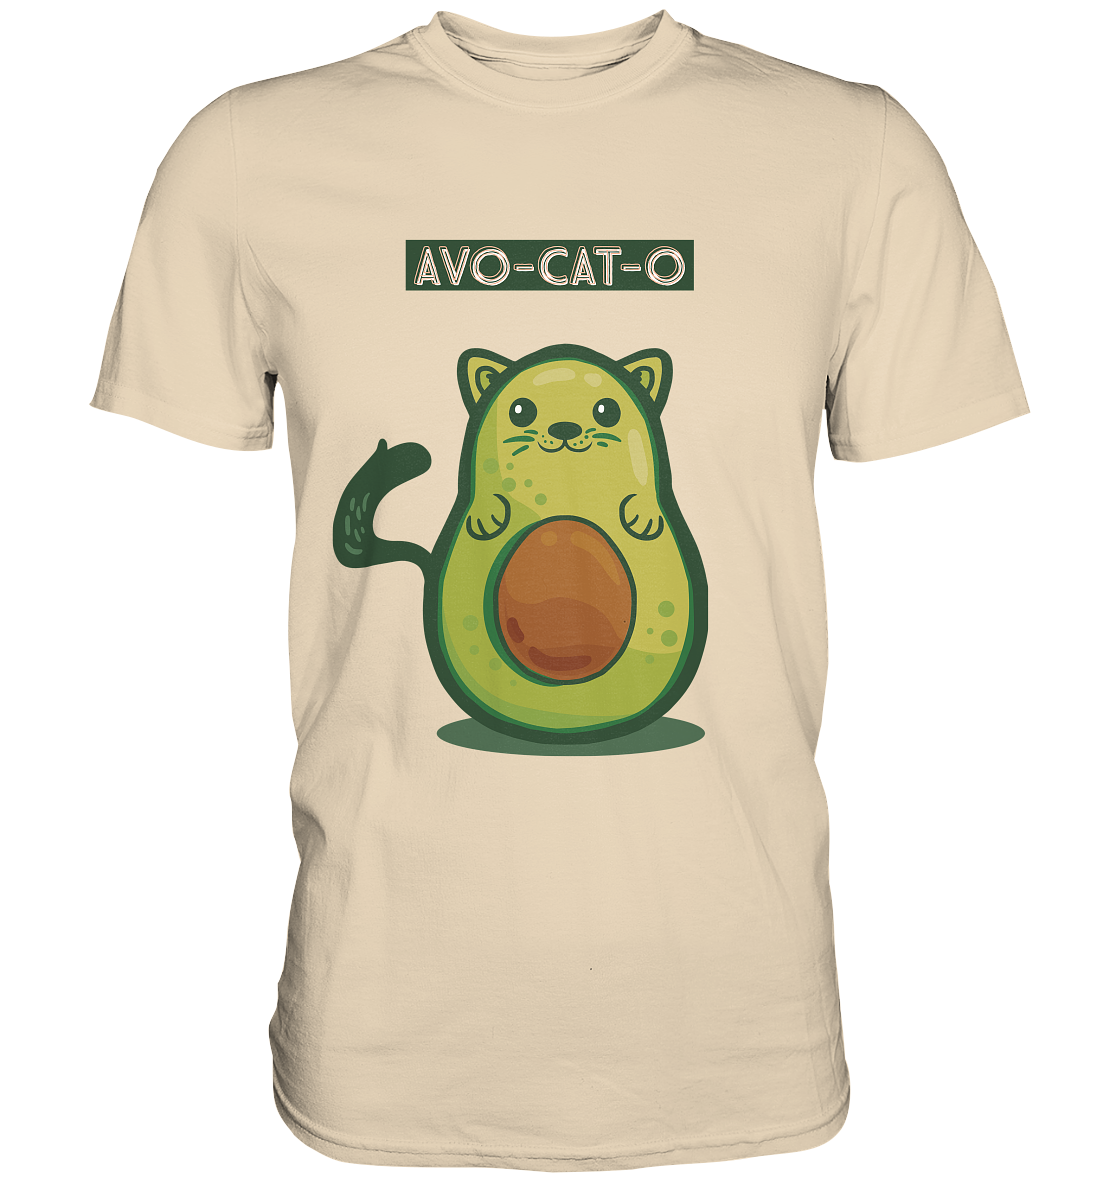 AVO-CAT-O die Avocado-Katze witzige Zeichnung - Premium Shirt